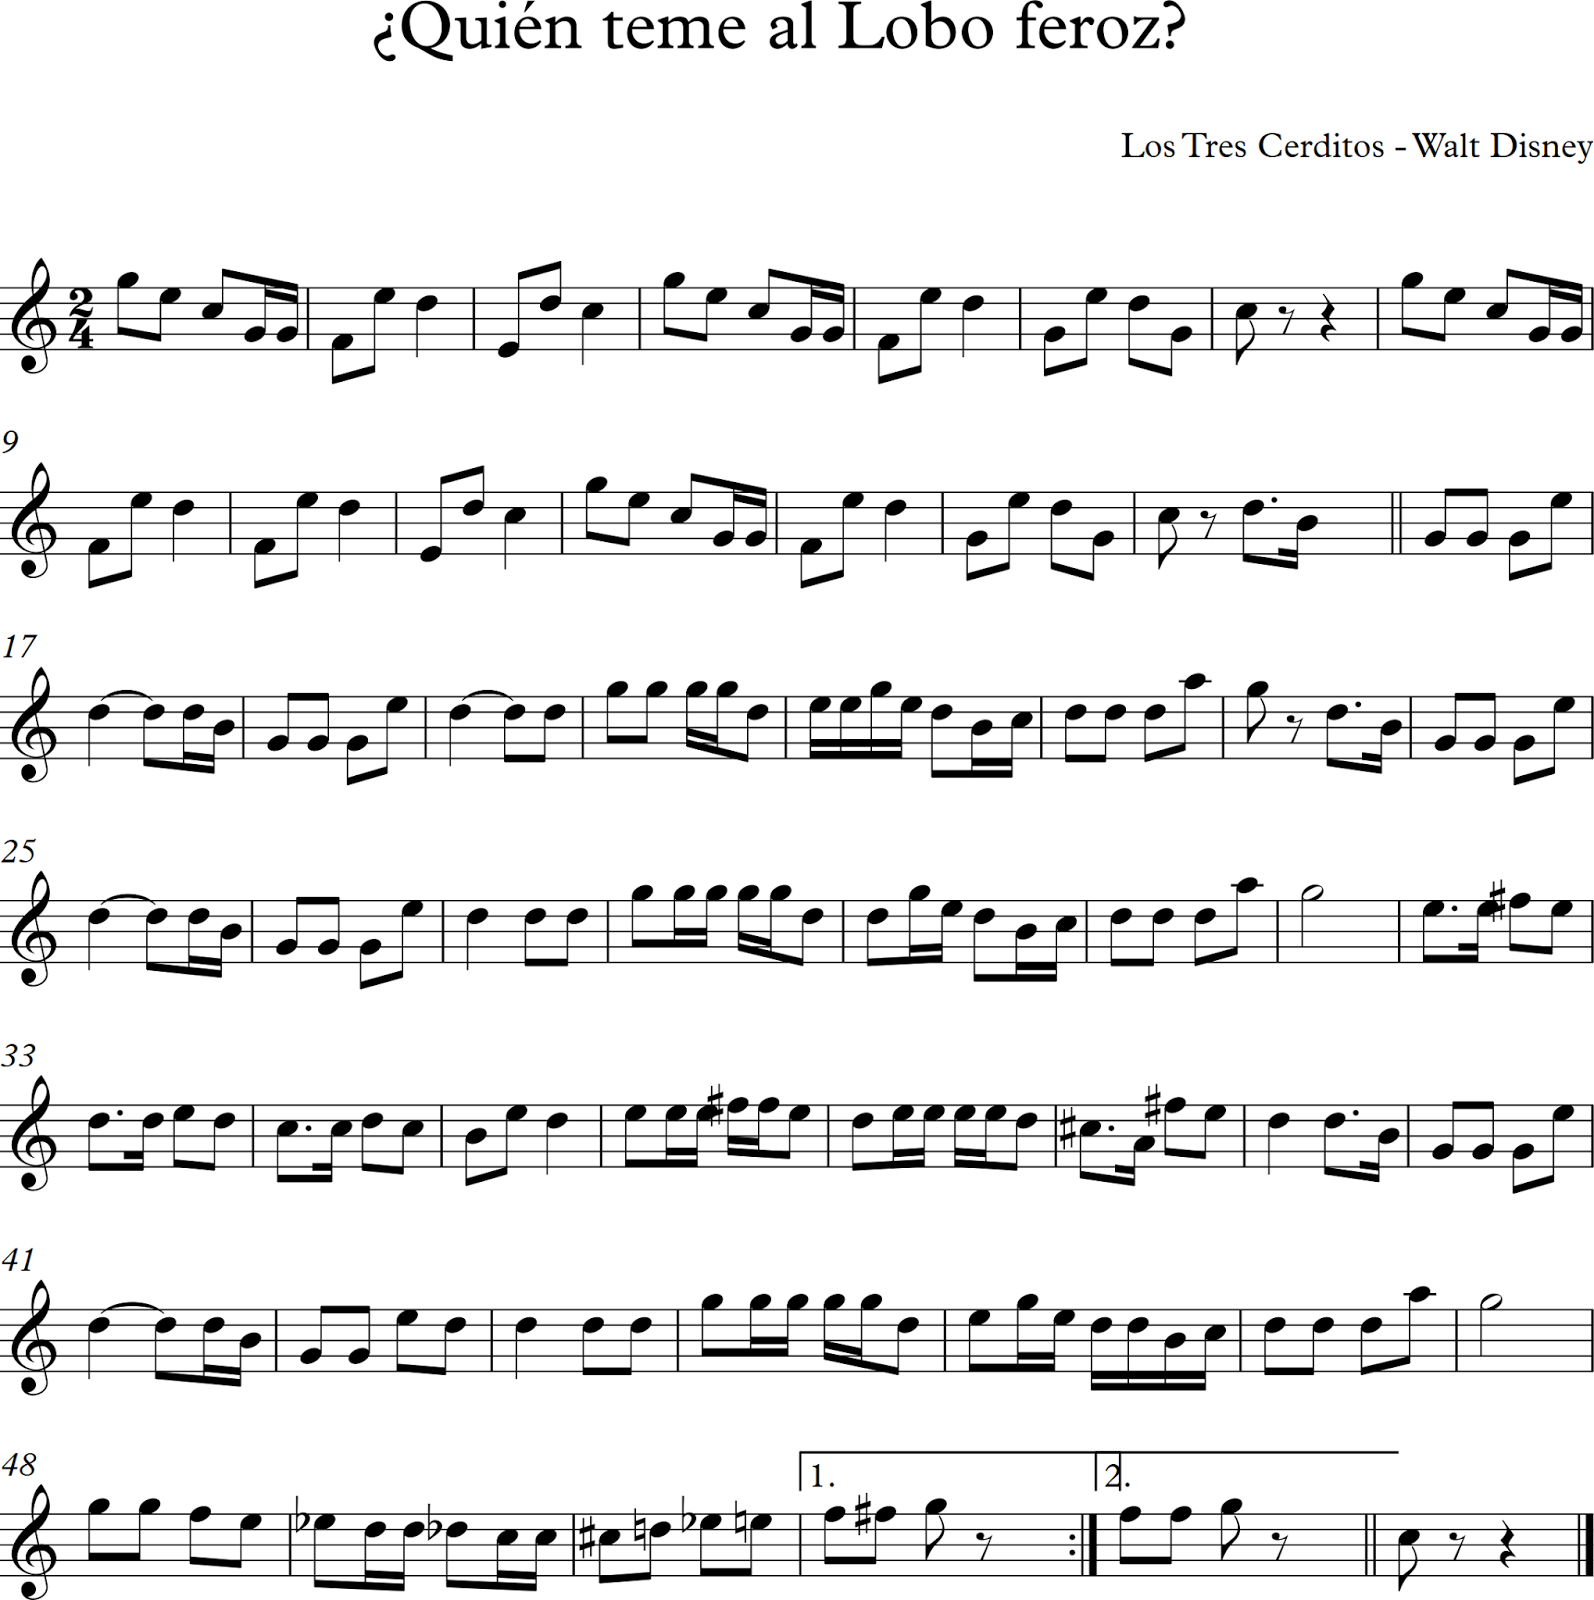 Descubriendo la Música. Partituras para Flauta Dulce o de Pico.: ¿Quién Teme al Lobo